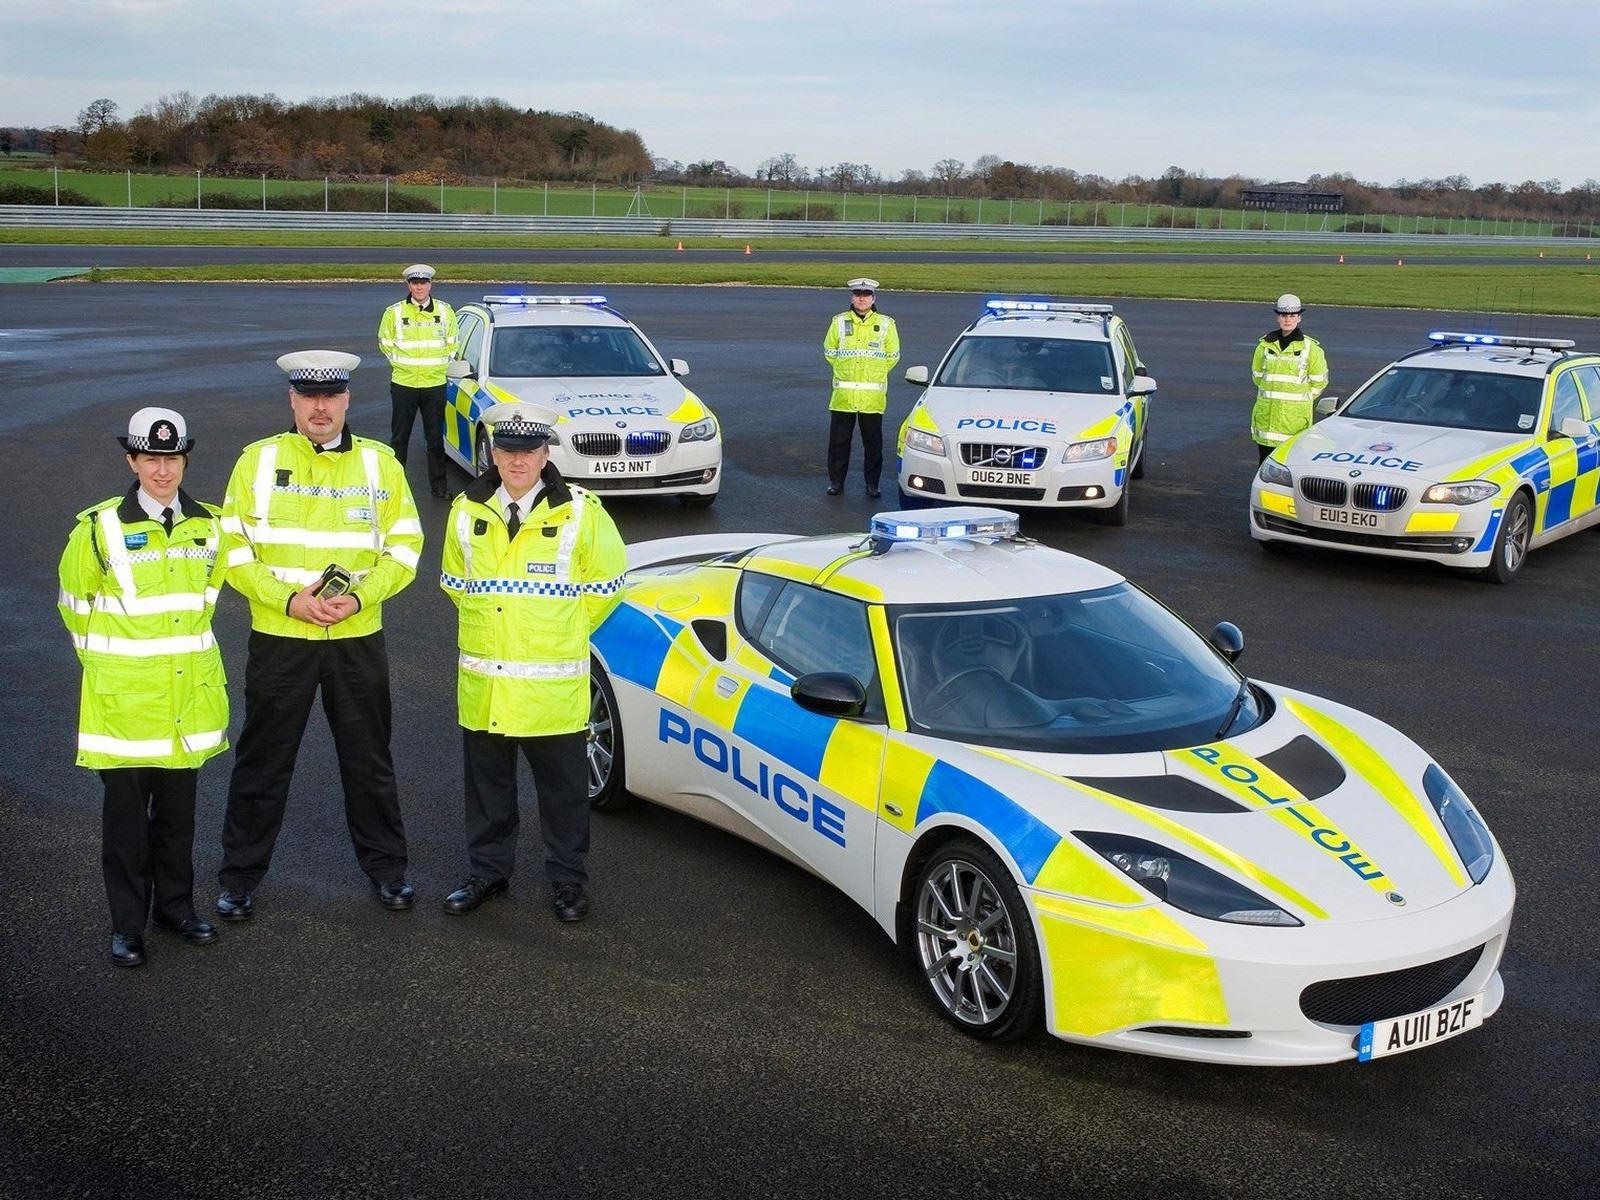 "بالصور" أكثر 10 سيارات شرطة تميزا حول العالم 46